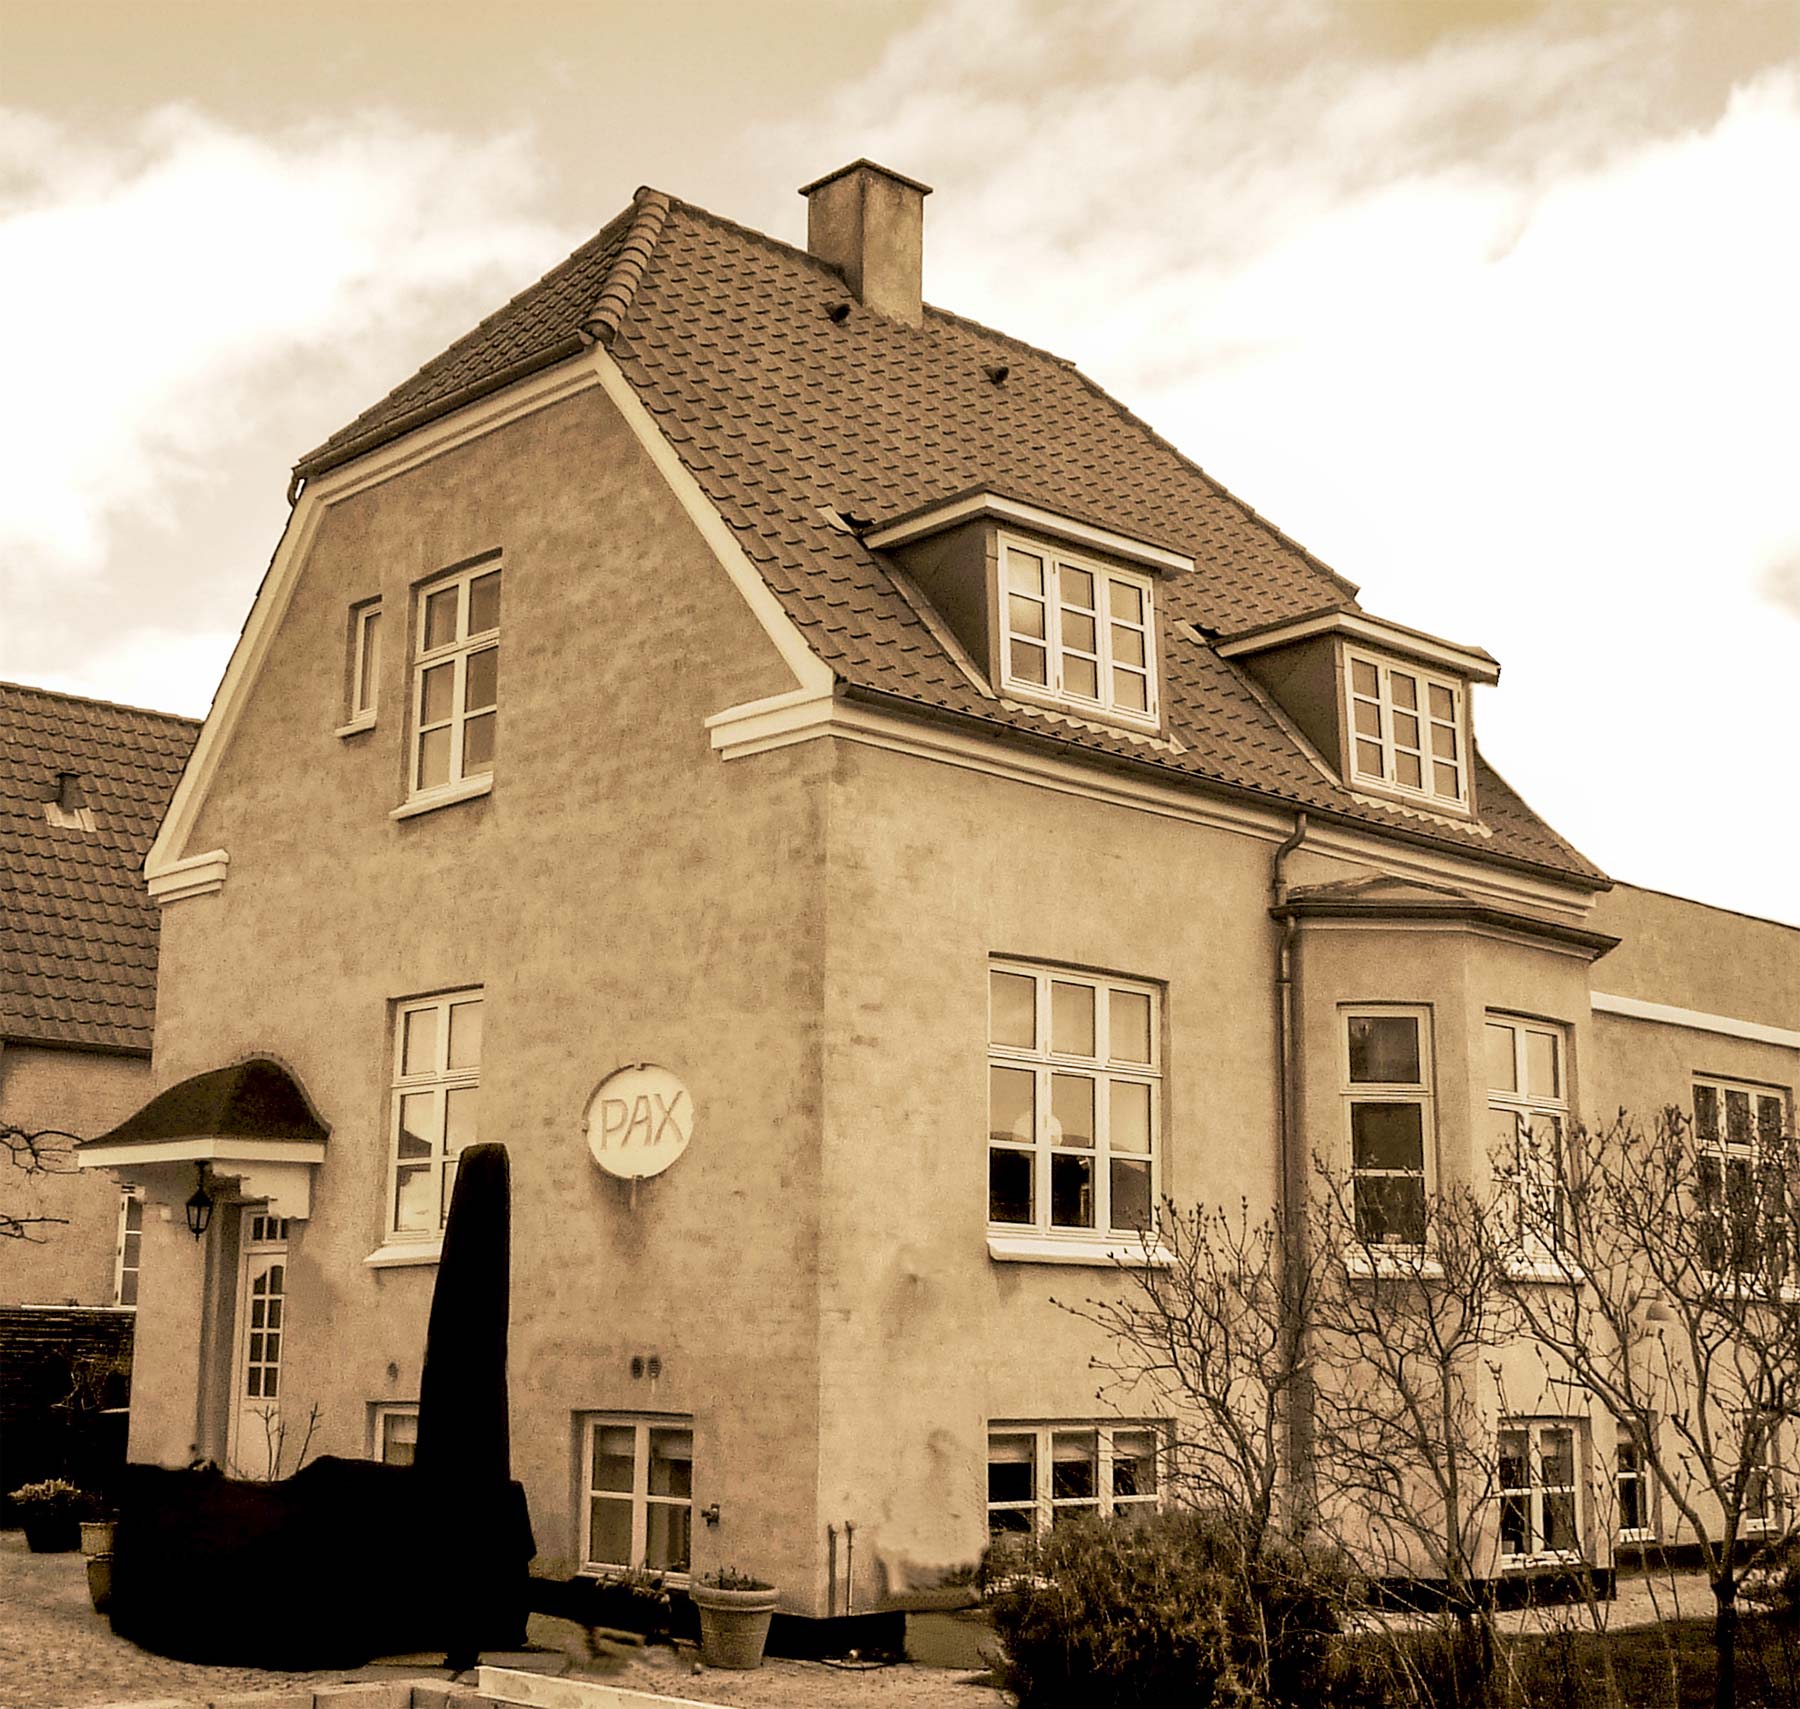 Villa Pax i Dragør spiller en rolle i fortællingen om dobbeltmordene.